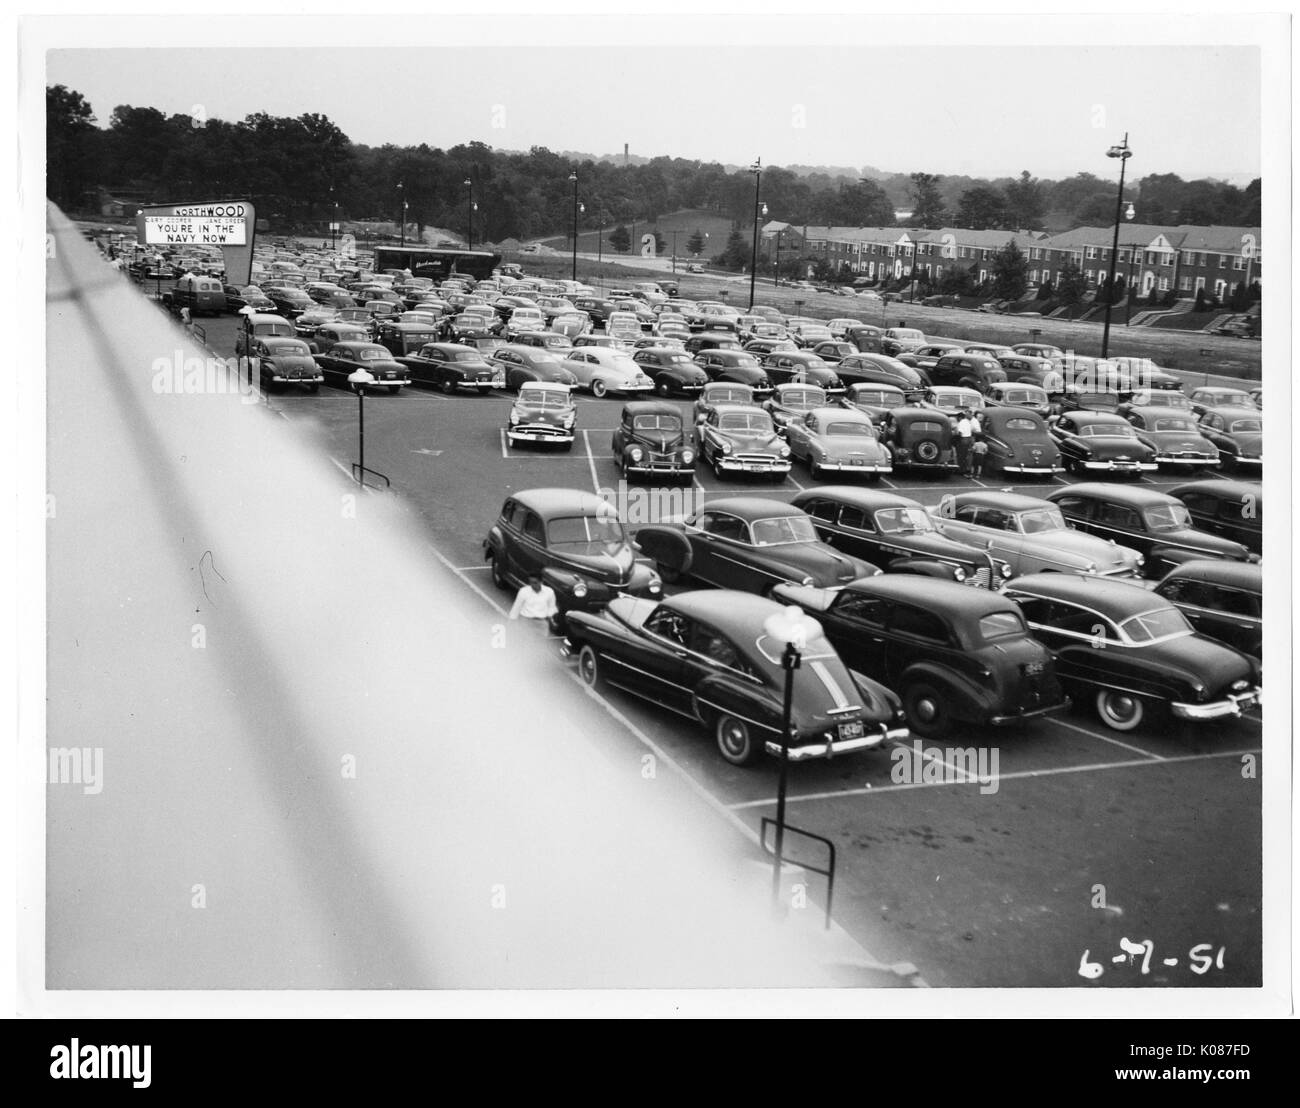 Parkplatz von Northwood Einkaufszentrum mit Hunderten von Autos, Zeichen im Hintergrund, die lautet: "Sie in der Marine sind Jetzt', Bäume, Häuser und Straßenbeleuchtung im Hintergrund, Baltimore, Maryland, 1951. Stockfoto